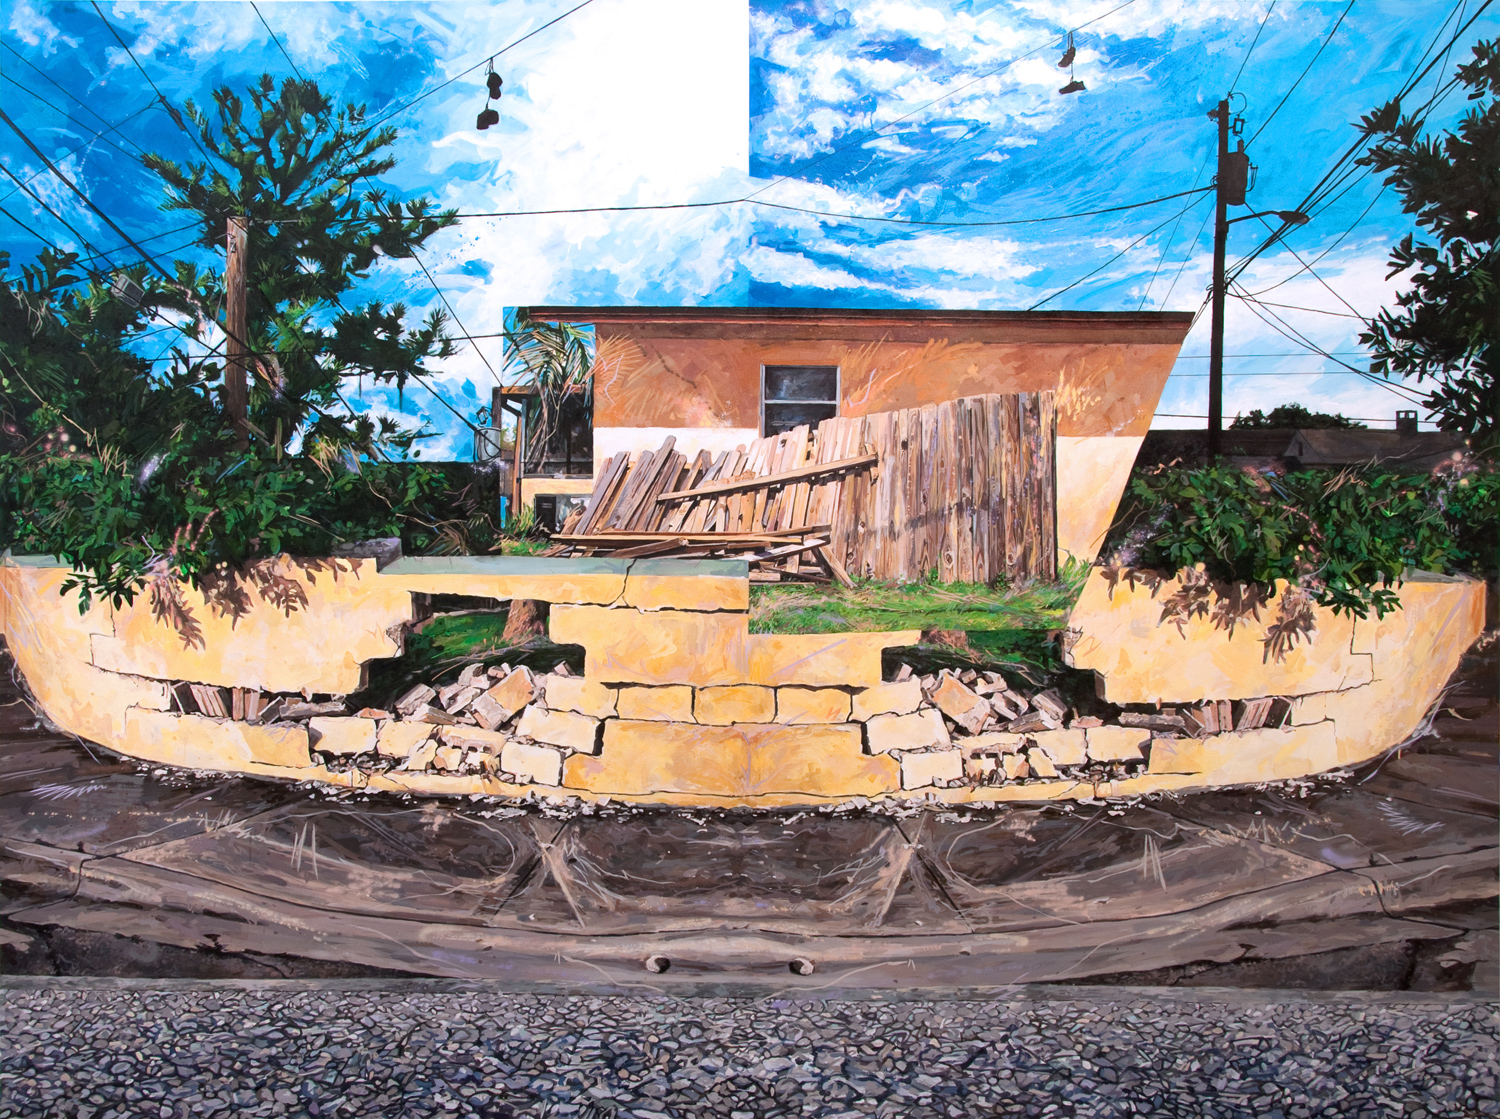   Michael Vasquez “Ark Aground (Last House)” 2015 acrylic and acrylic spray paint on canvas 108 x 144”     